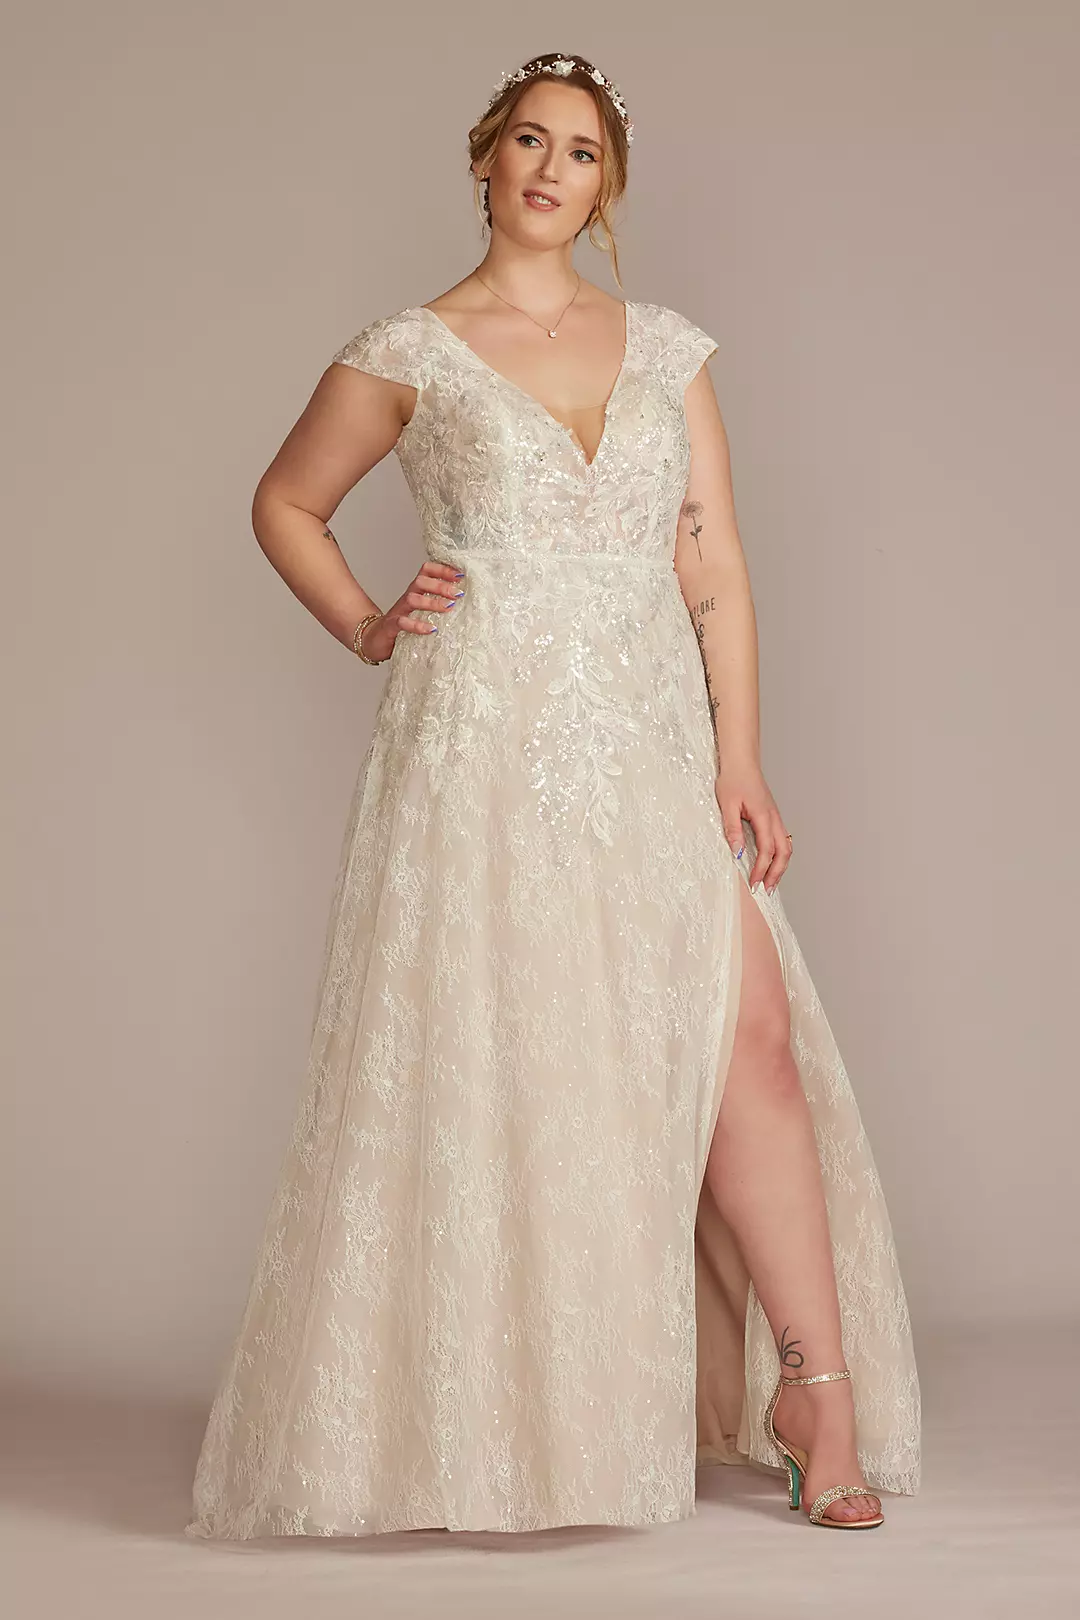 Beaded Lace Cap Sleeve Wedding Dress with Slit Image